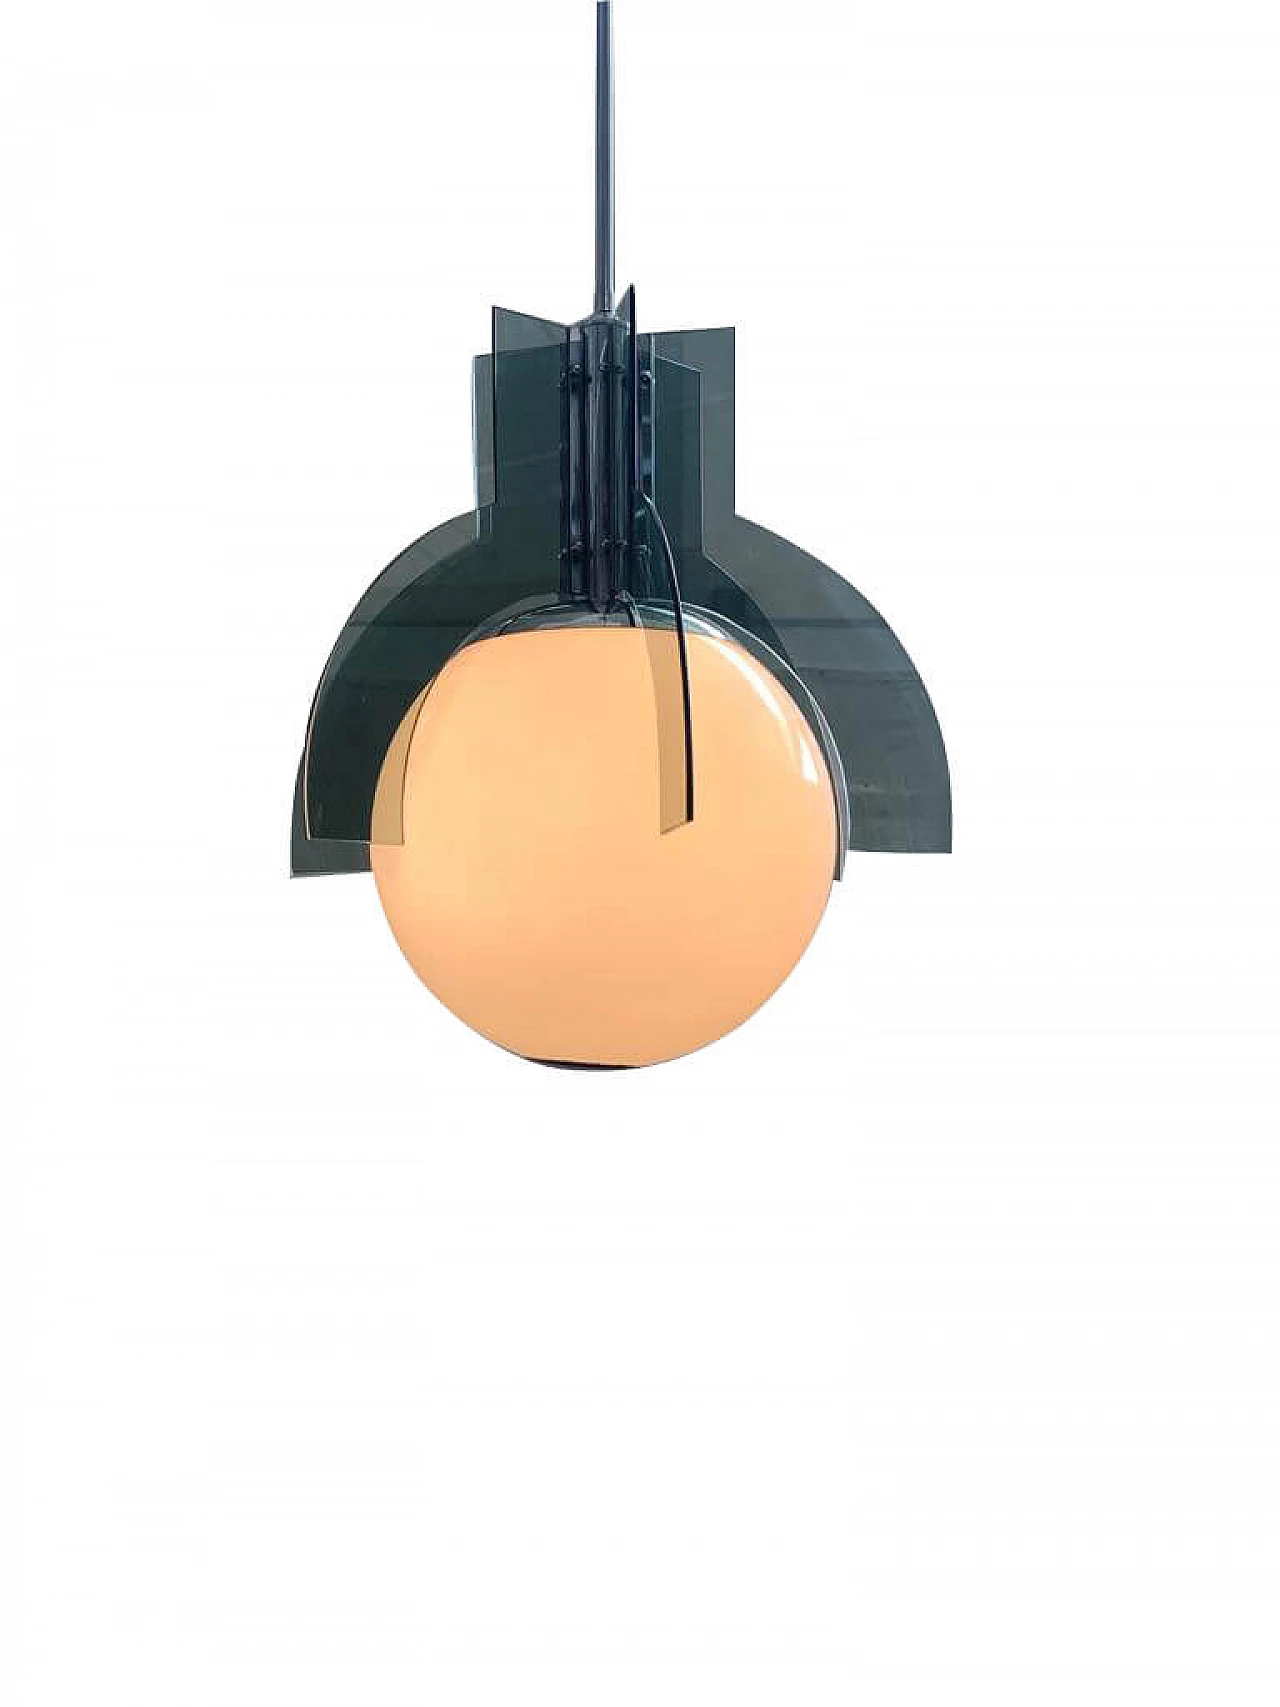 Ceiling Lamp, 1970s 1116393